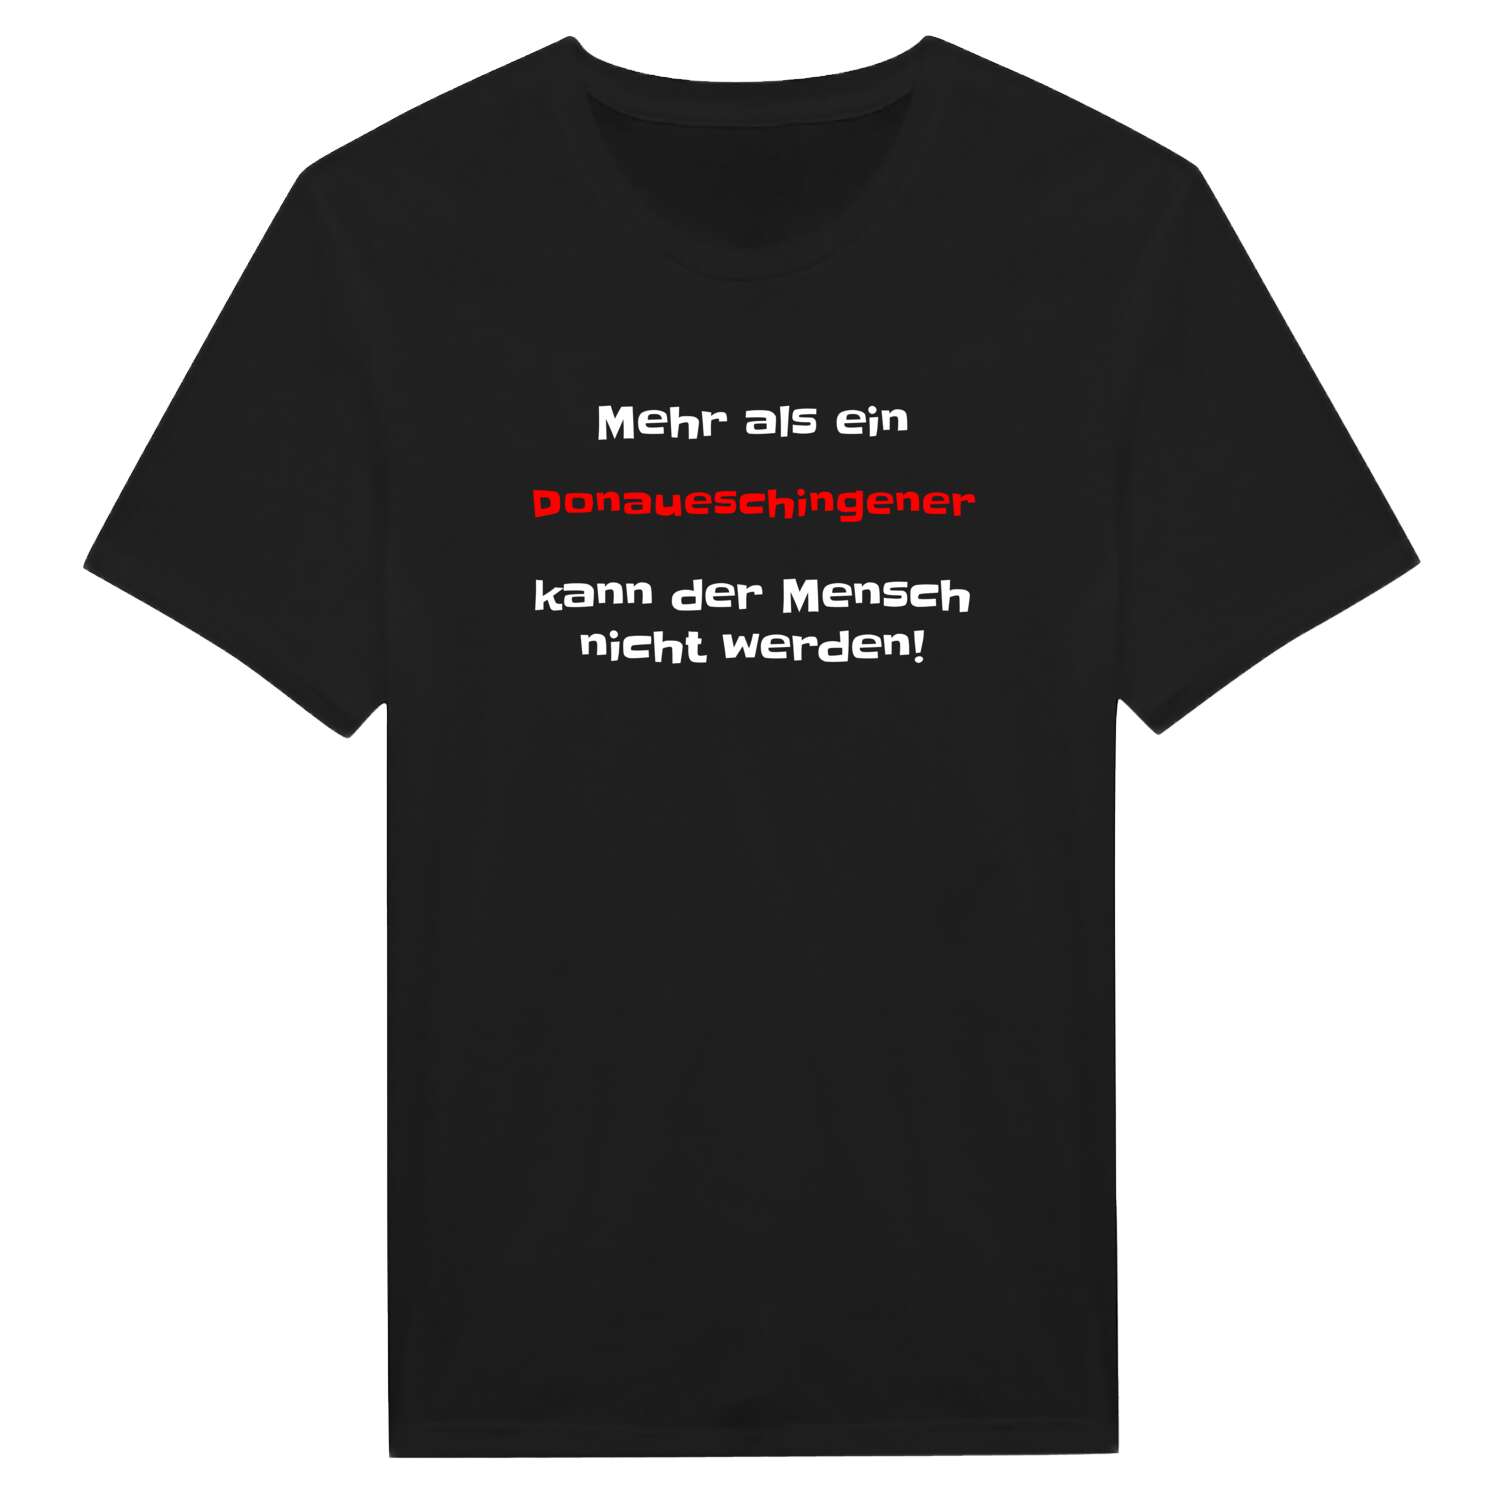 Donaueschingen T-Shirt »Mehr als ein«